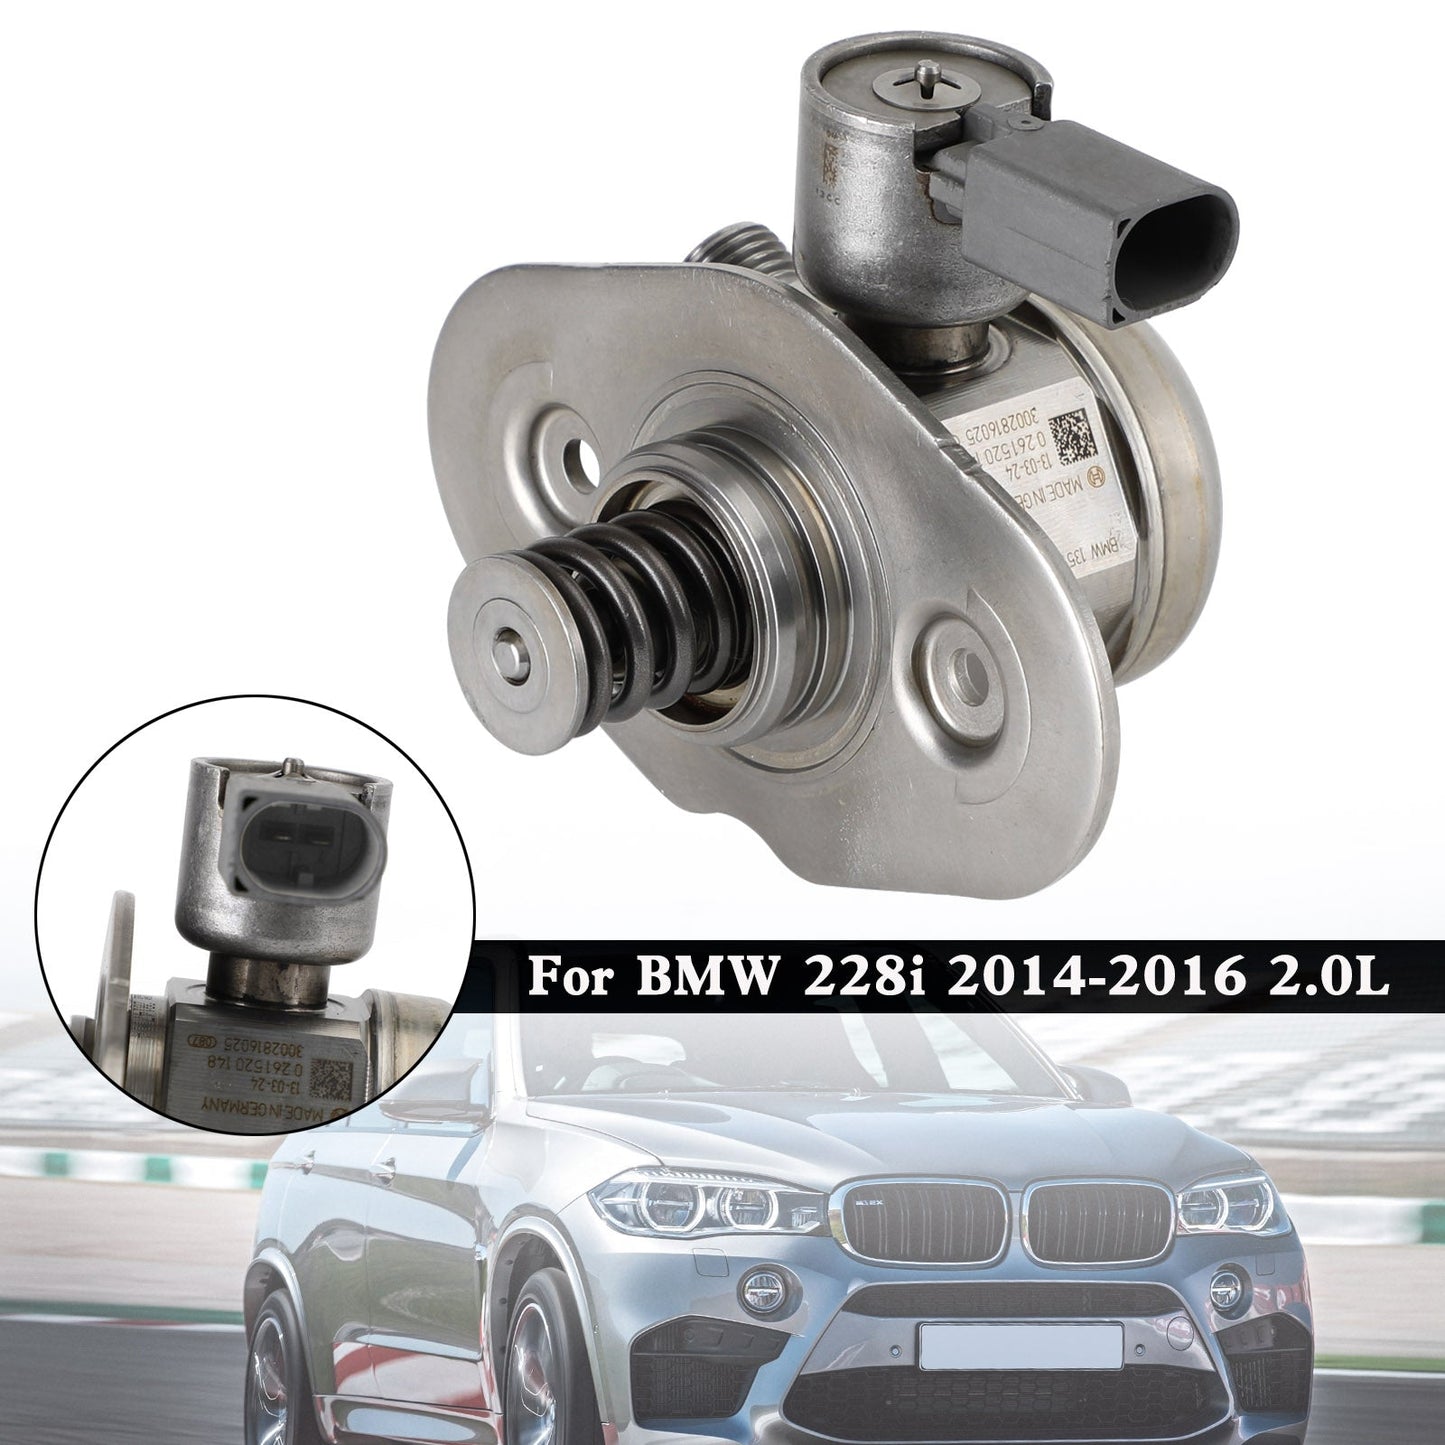 2015-2017 BMW X4 / 2014-2016 228i 2.0L 13517584461 323-59462 High Pressure Fuel Pump